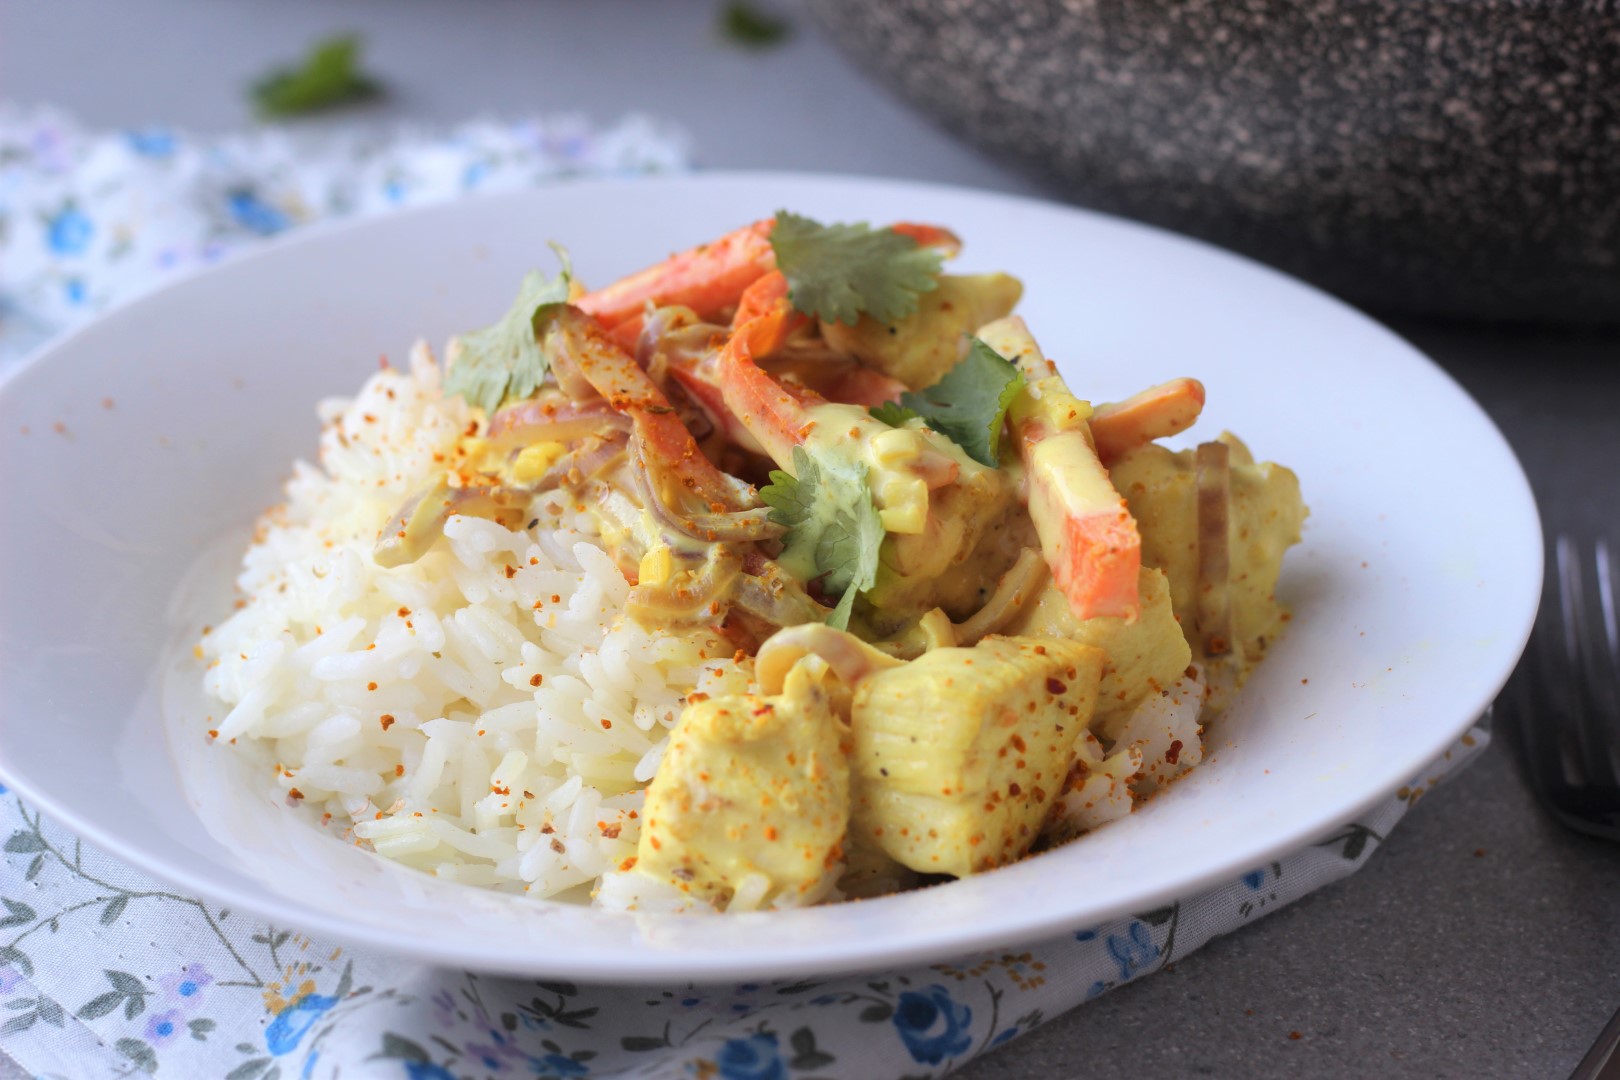 wok de pollo al curry, pollo con salsa de curry, vegetales, cocinar wok, recetas de cocina, recetas saludables, recetas rápidas, recetas Essen.